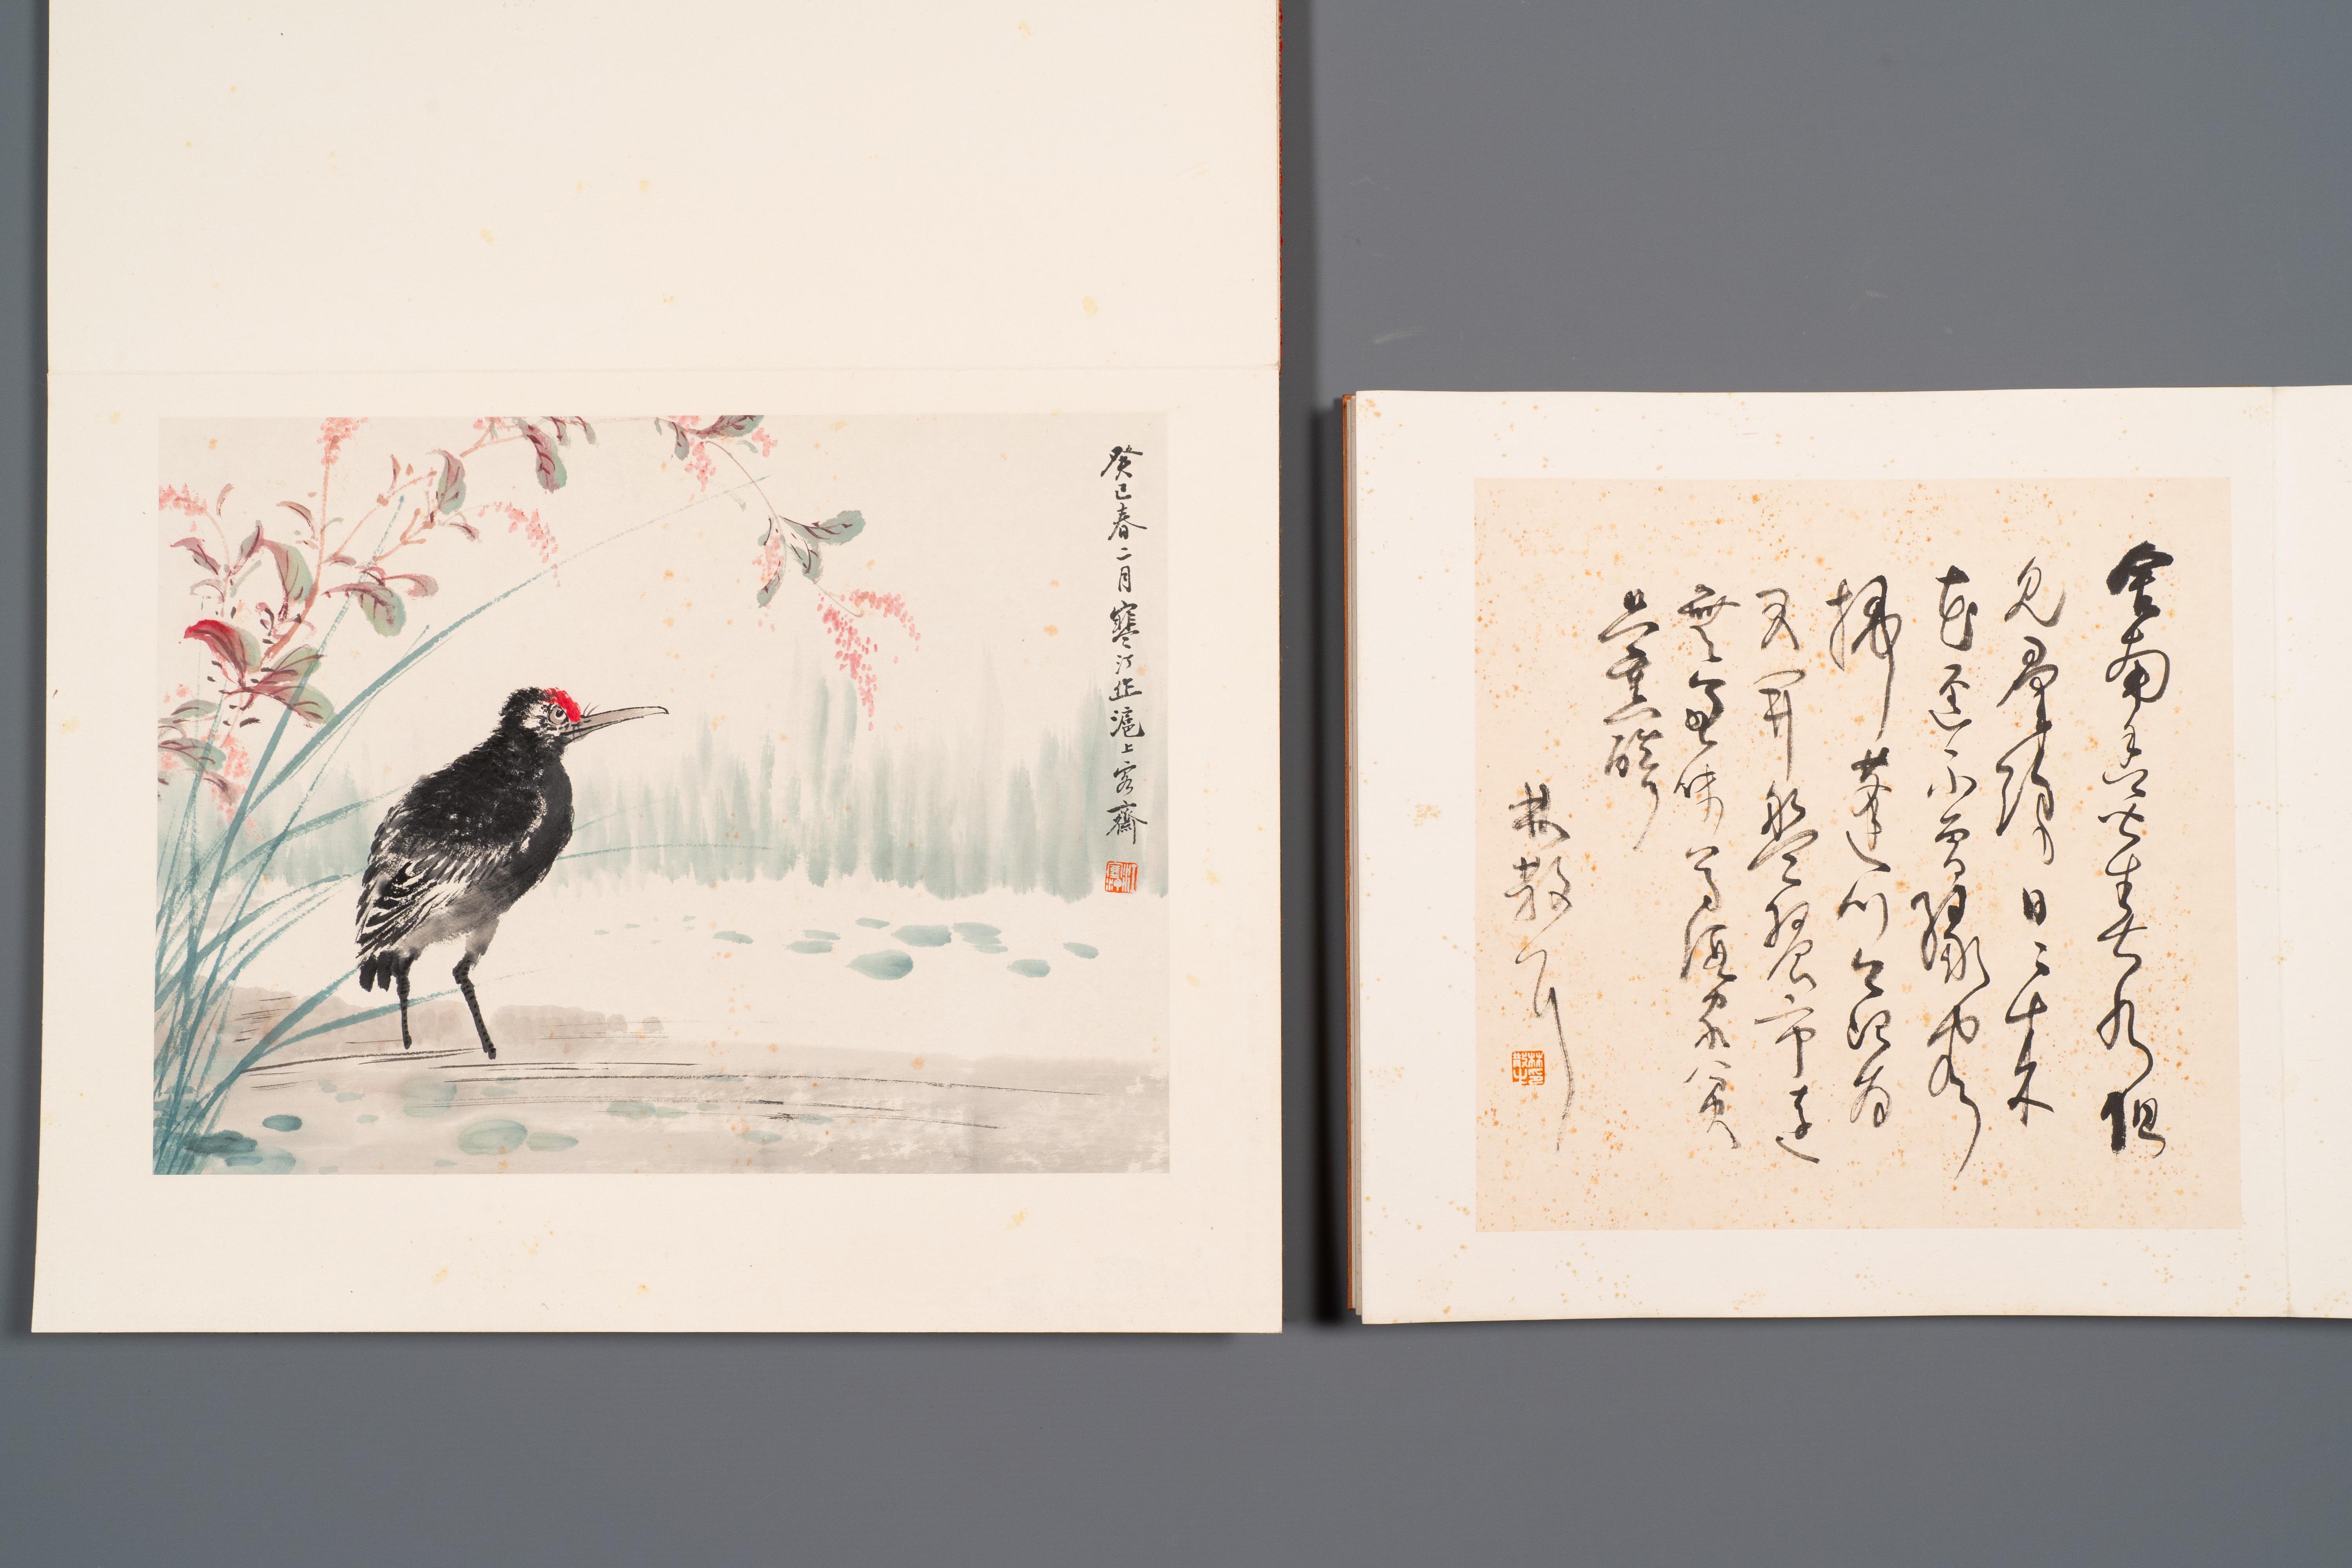 Three albums: 'Jiang Hanting æ±Ÿå¯’æ±€ (1904-1963), Lin Sanzhi æž—æ•£ä¹‹ (1898-1989) and Qi Gong å¯ - Image 10 of 23